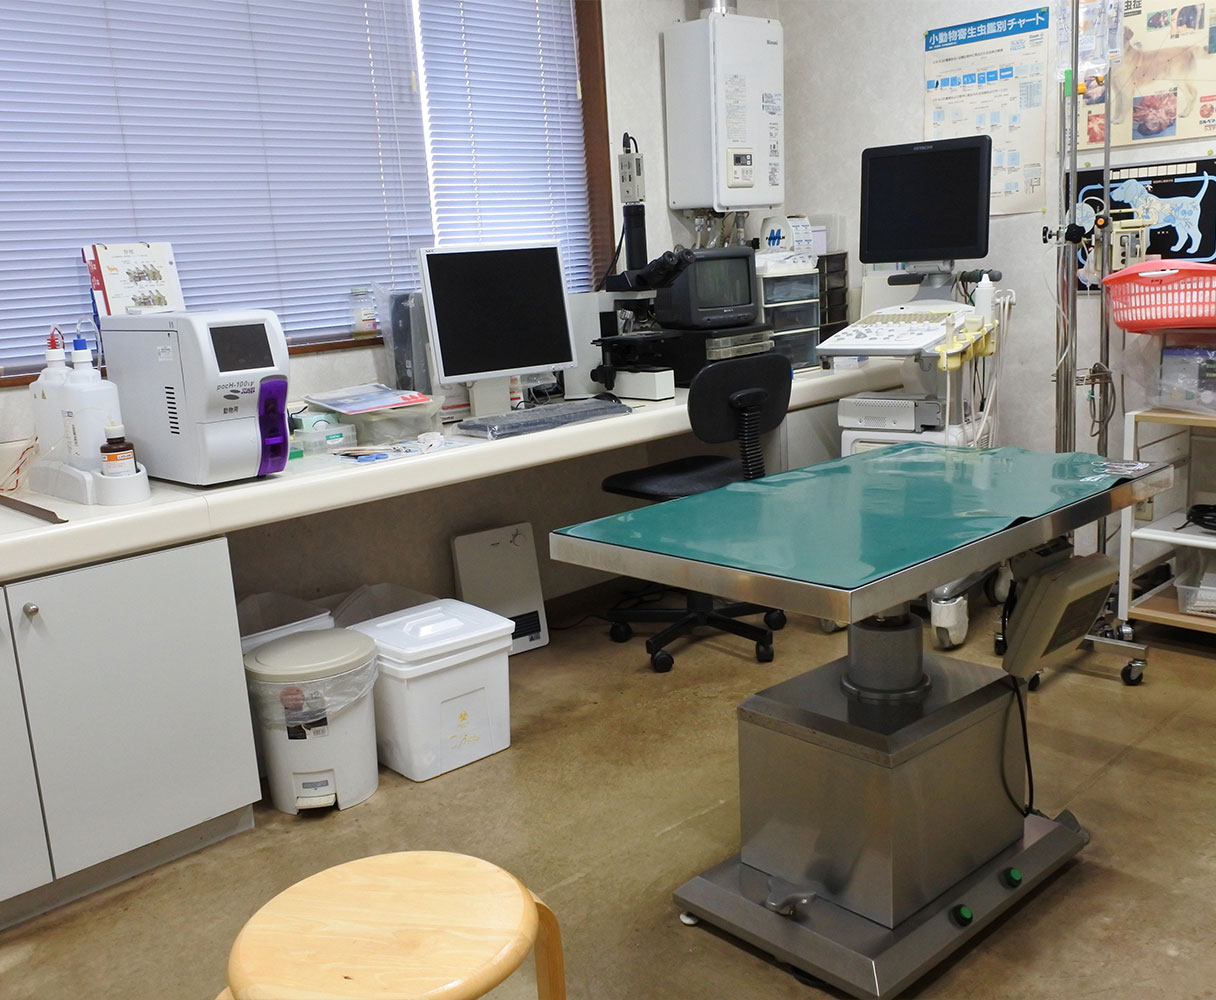 やまぎし動物病院は石川県羽咋市粟生町にある動物病院です。